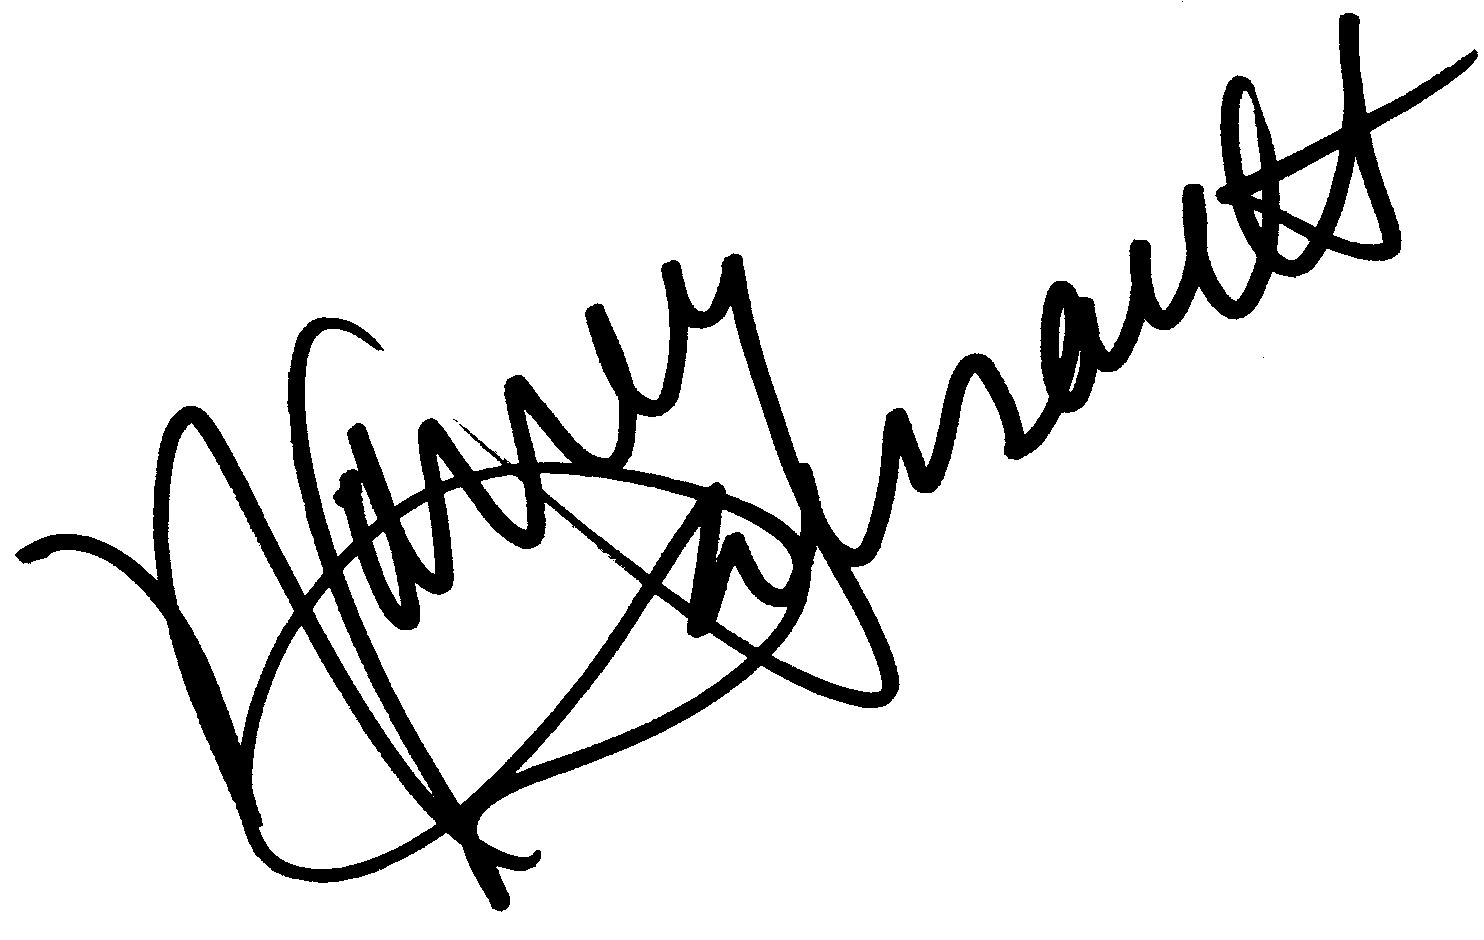 Nancy Dussault autograph facsimile